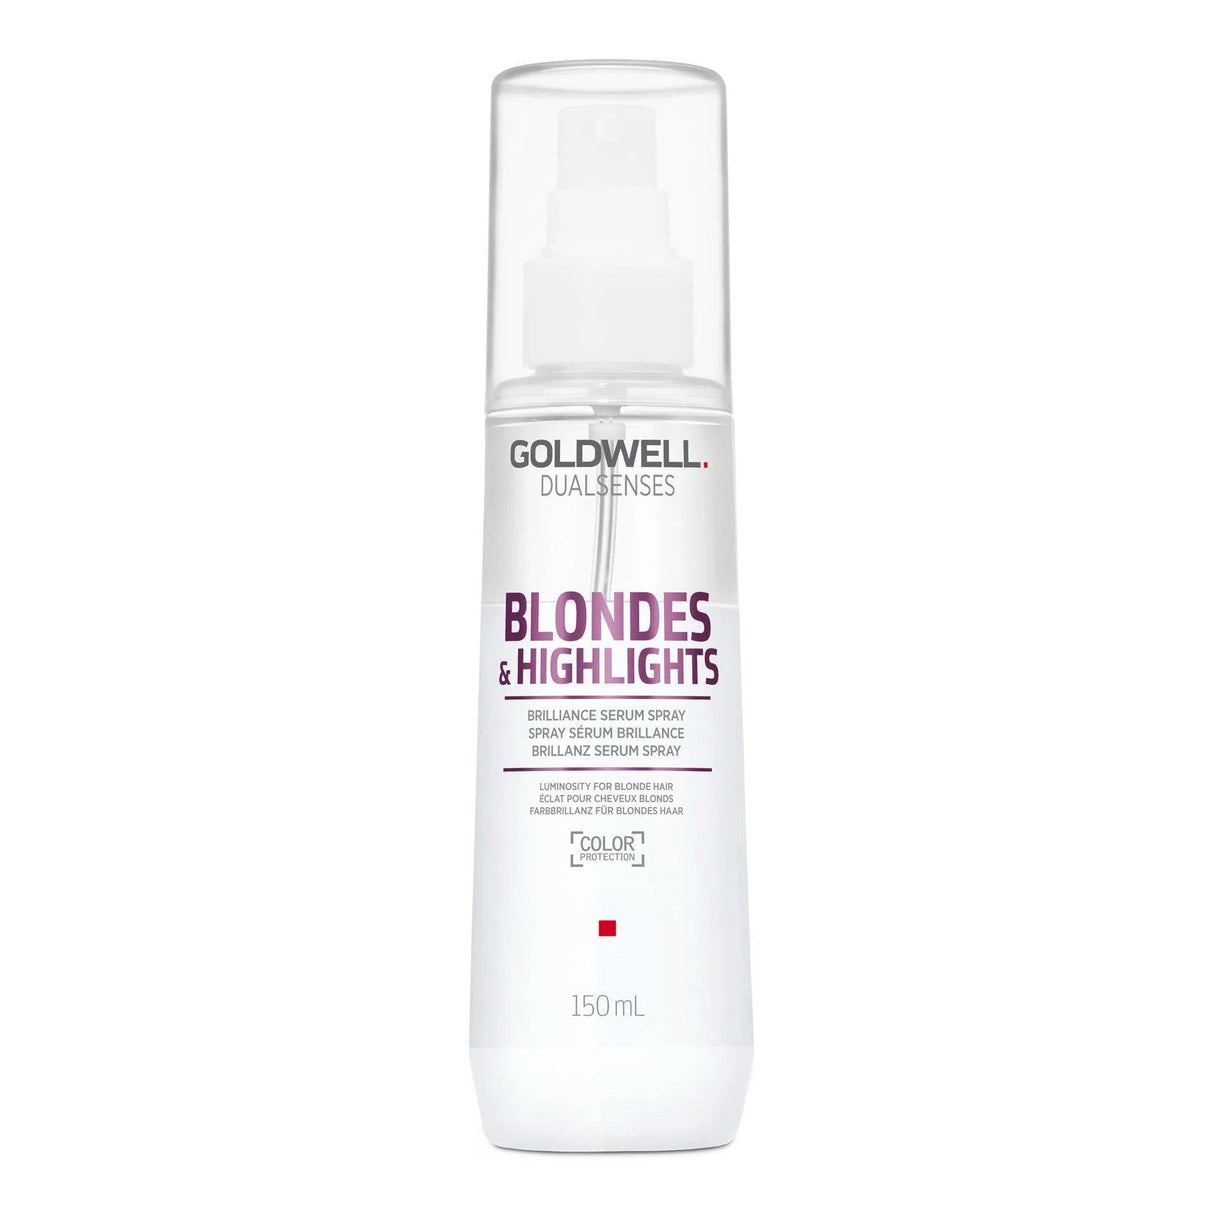 Blondes + Highlights Brilliance Serum Spray